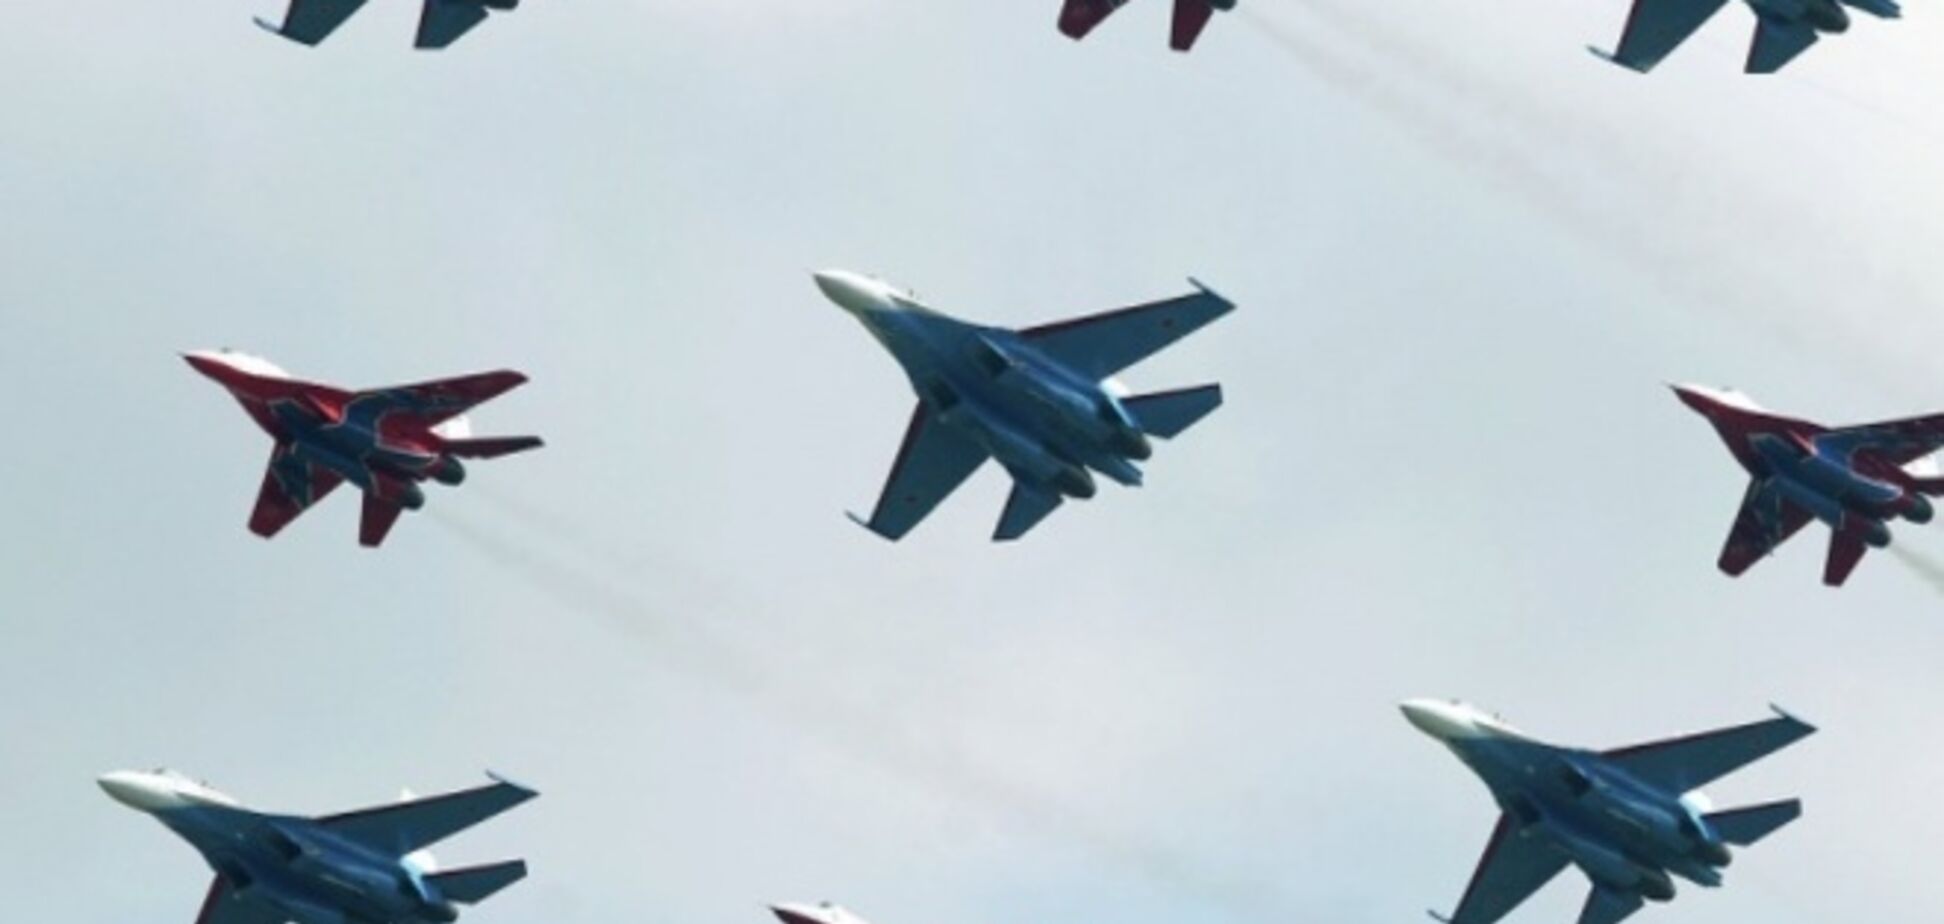 Військові пілоти РФ отримували наказ навмисне порушувати повітряний простір України - ЗМІ